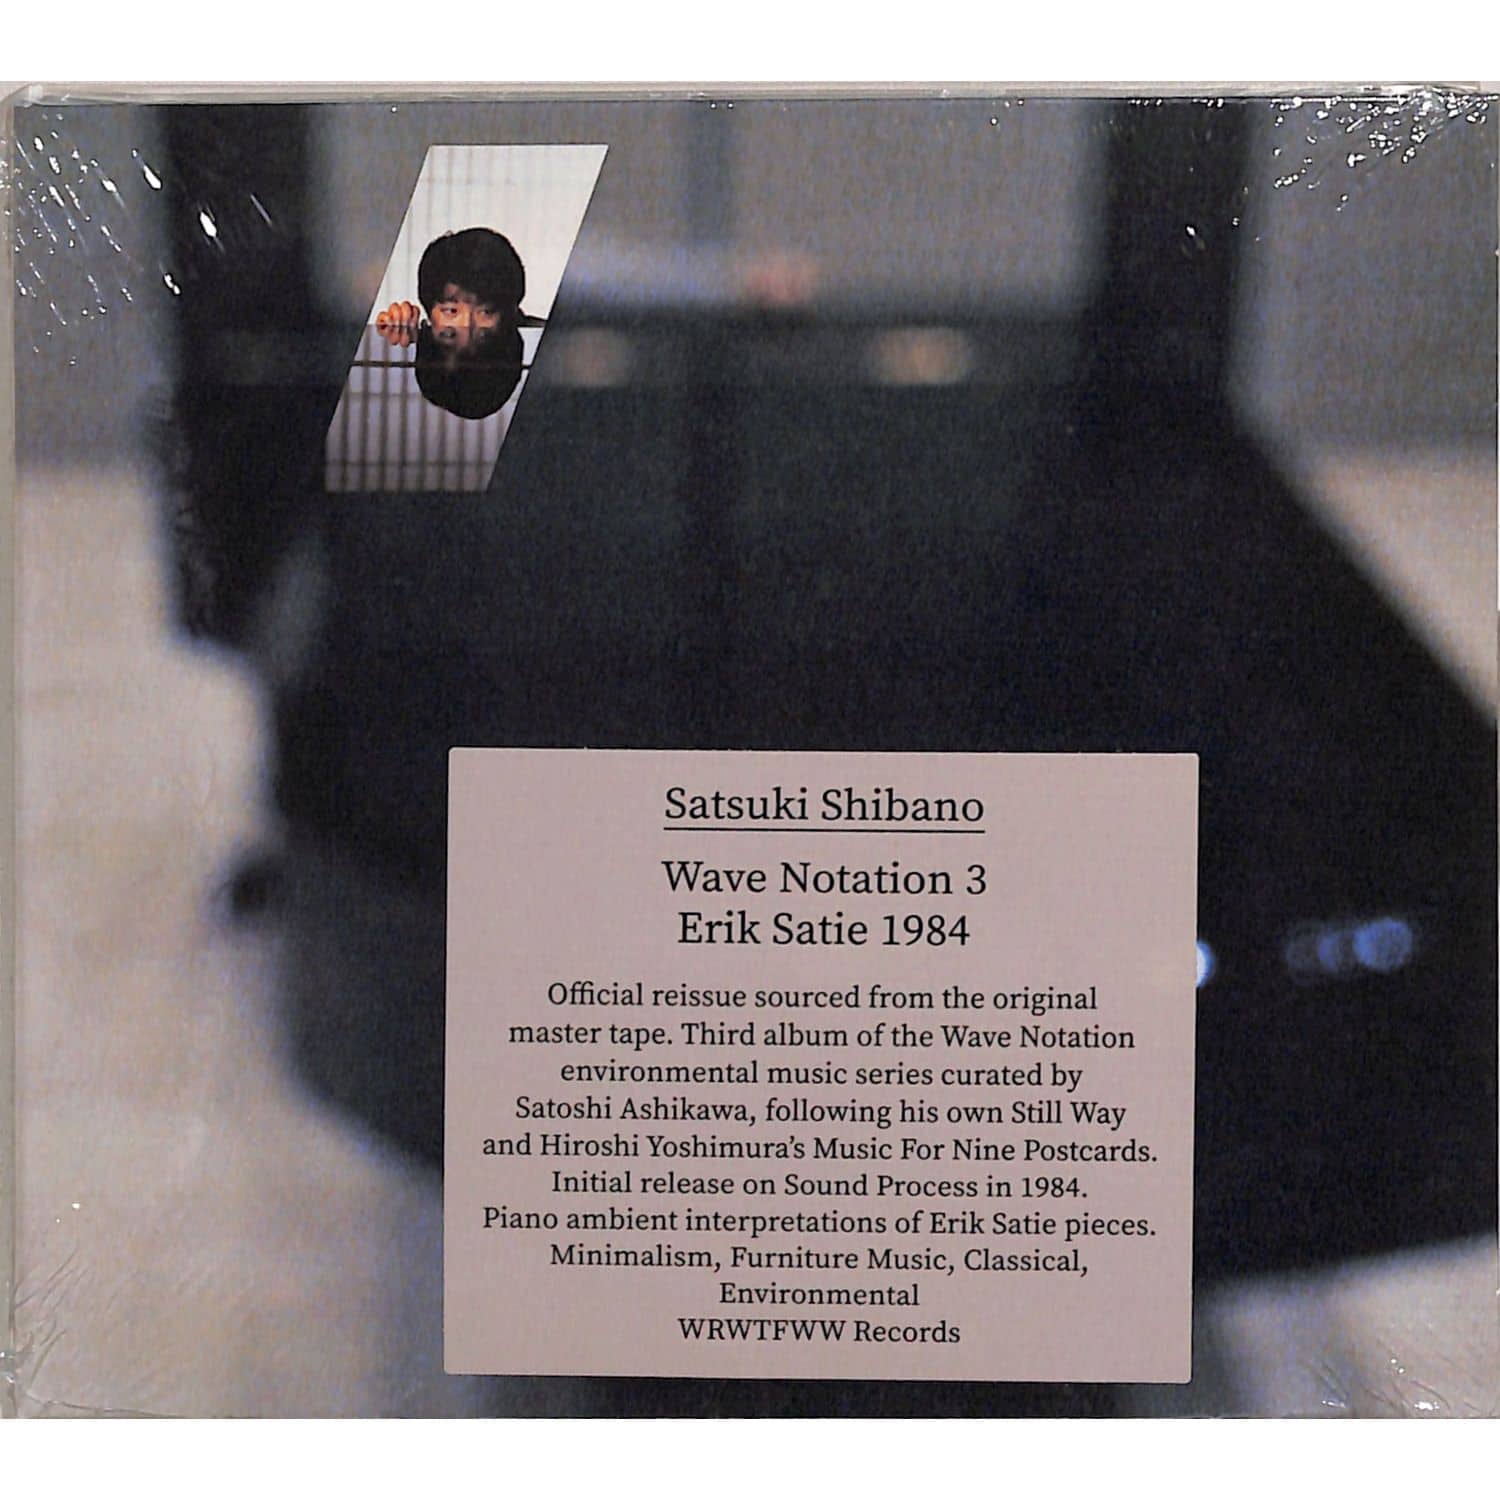 Satsuki Shibano - WAVE NOTATION 3 ERIK SATIE 1984 